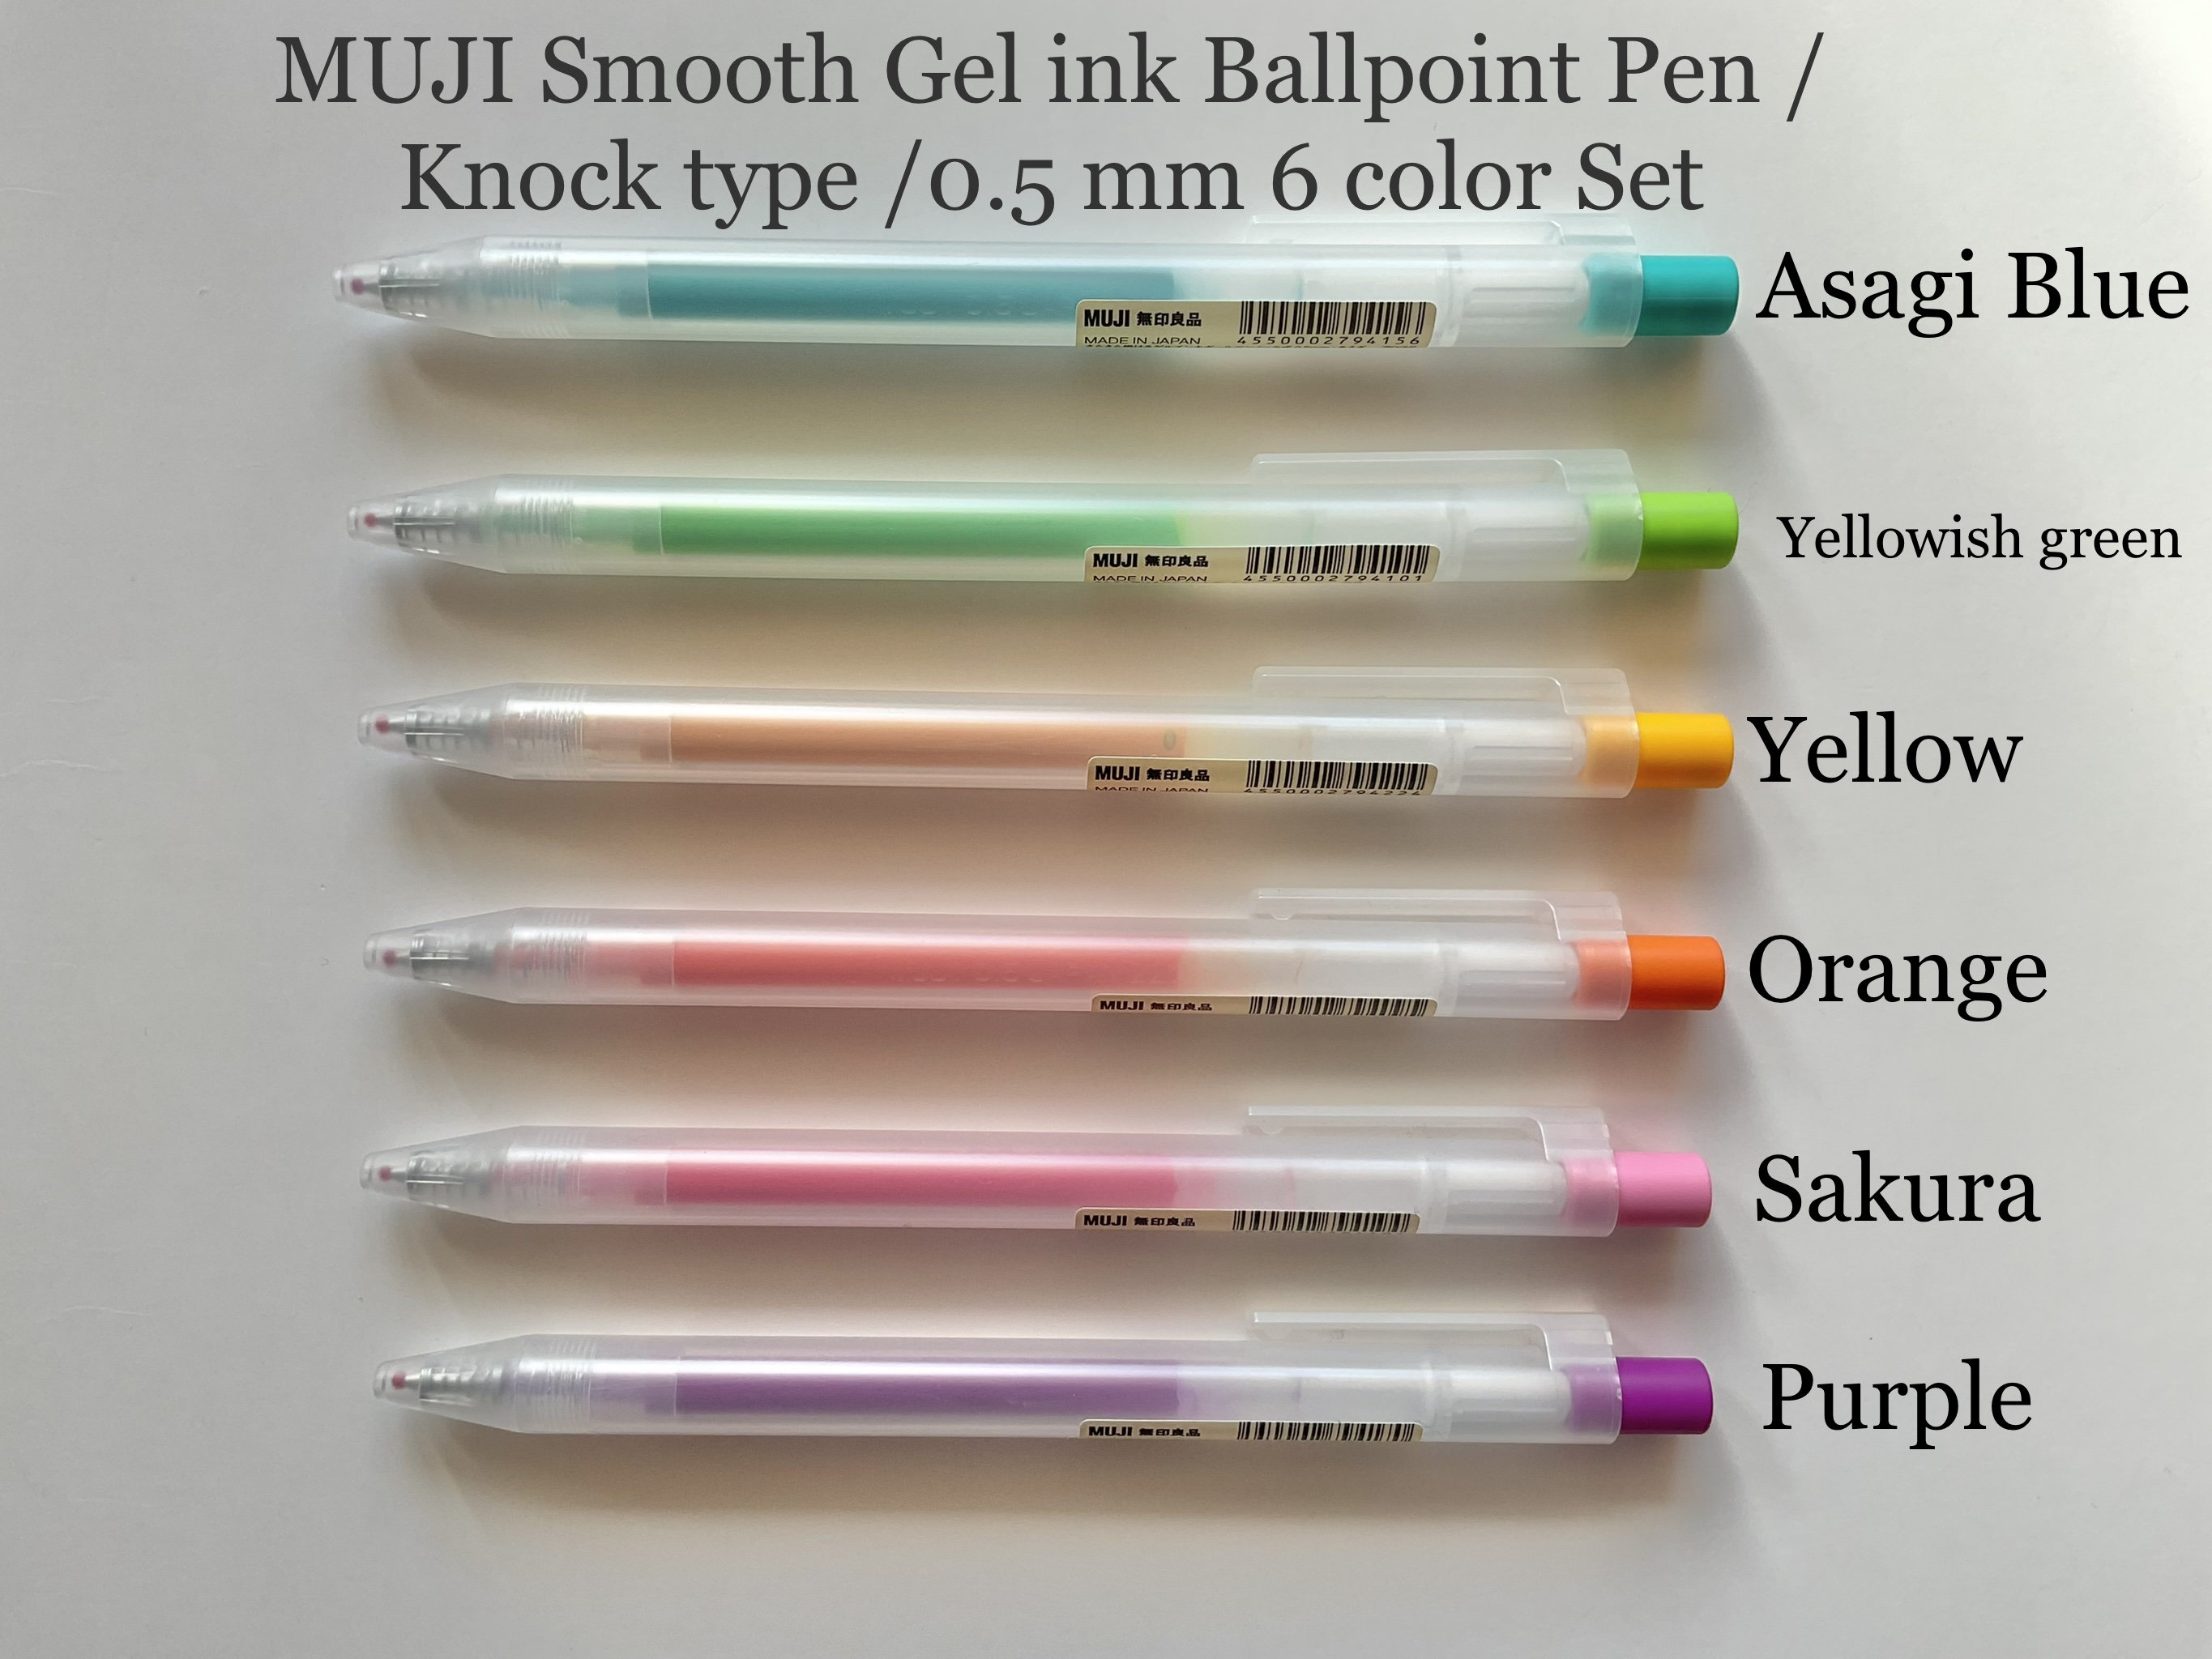 MUJI Gel Ink Ballpoint Pen Black Ink 0.5 Knock Type 10 Pens Smooth Writing  Pen